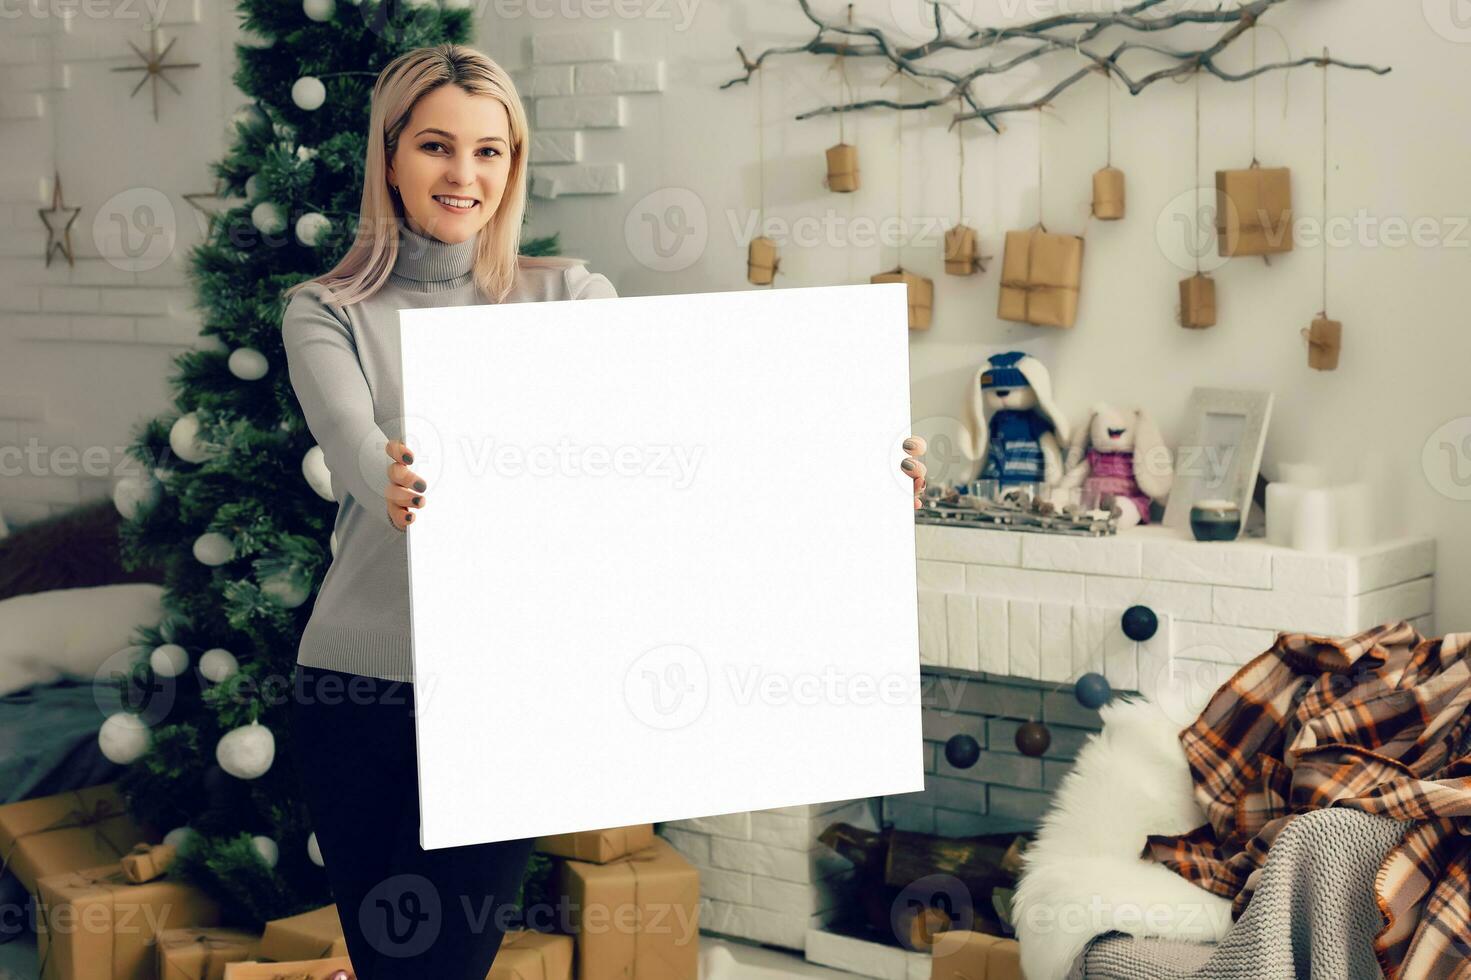 magnifique blond fille artiste posant près le blanc vide Toile - beauté photo pour coupure chemin publicité des modèles.